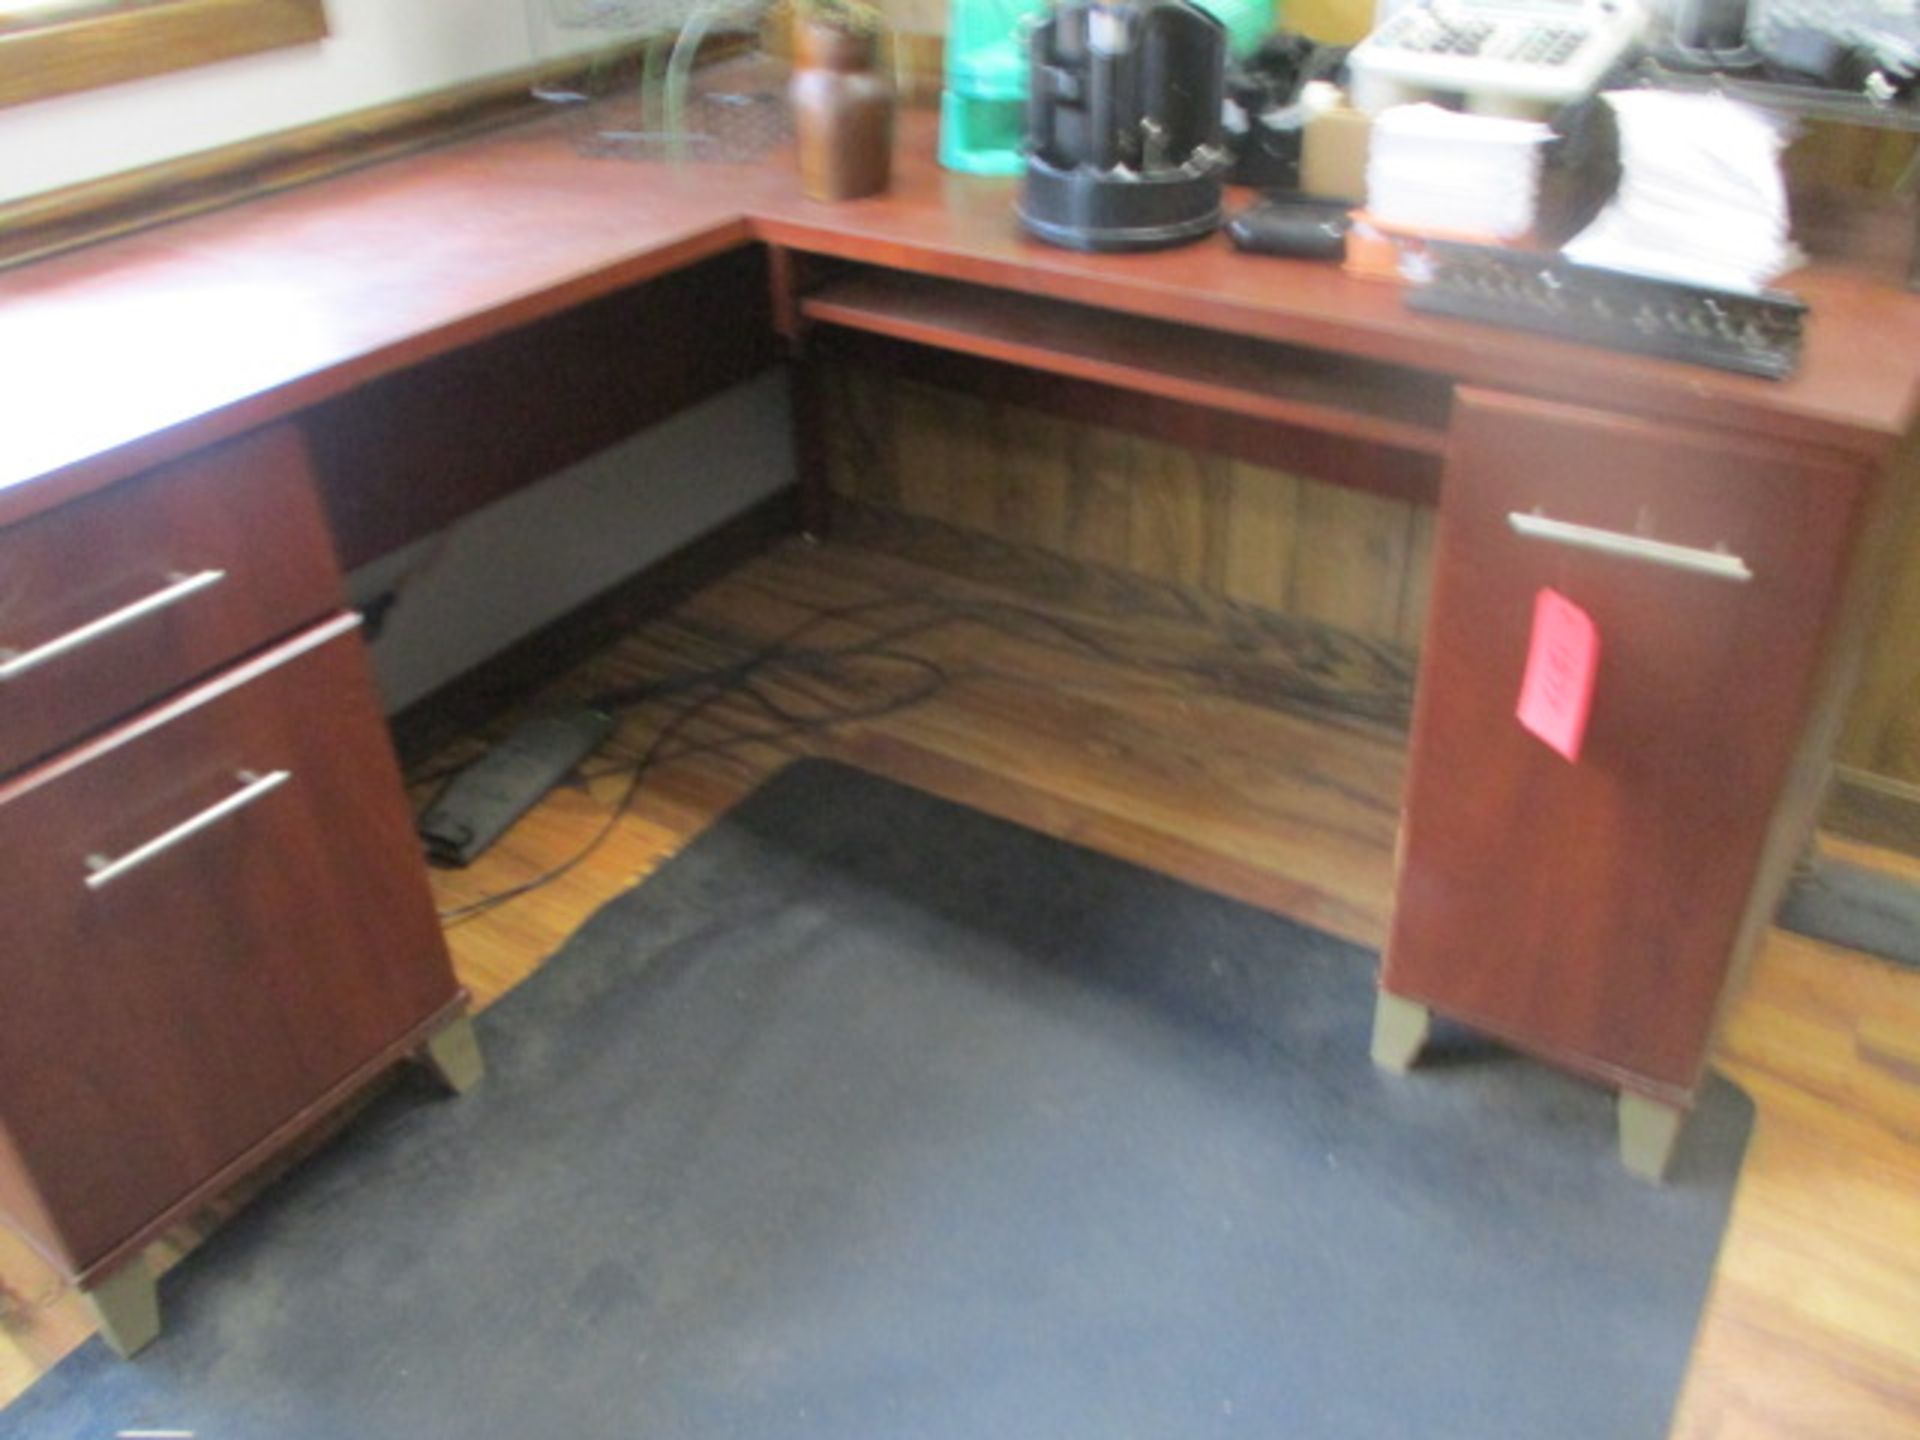 L-shape desk 59 x 59 x 29 with storage area